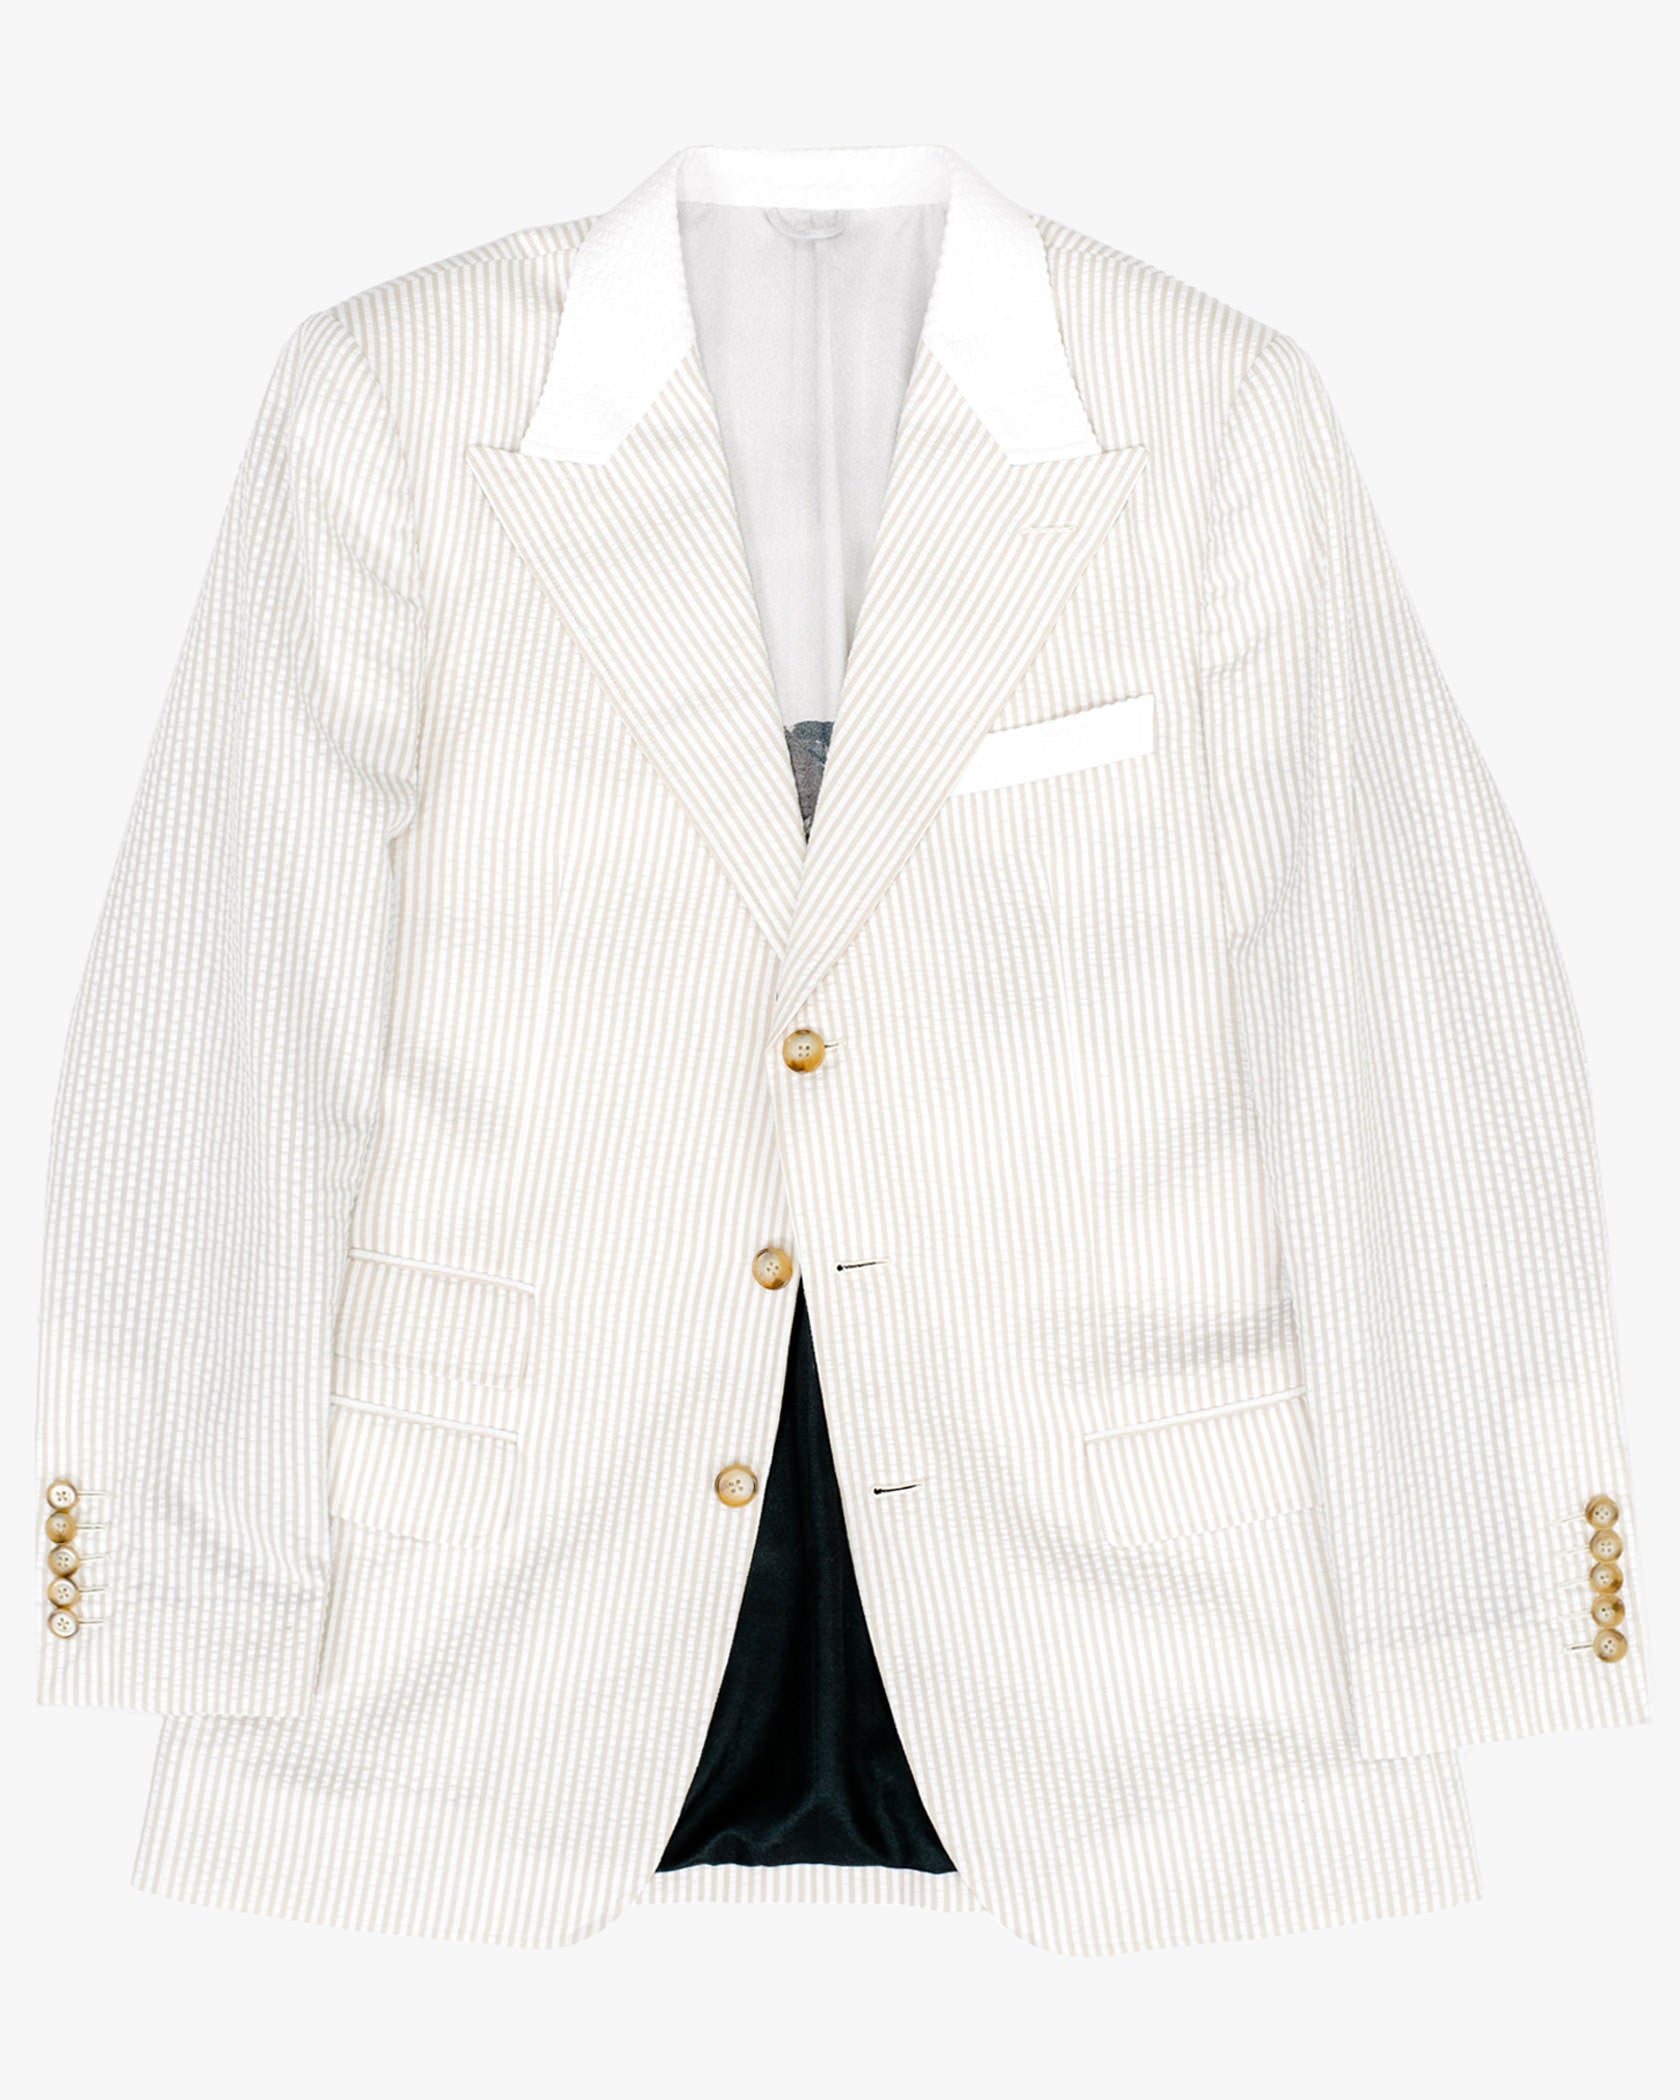 White & Beige Seersucker Suit - Summer 2021